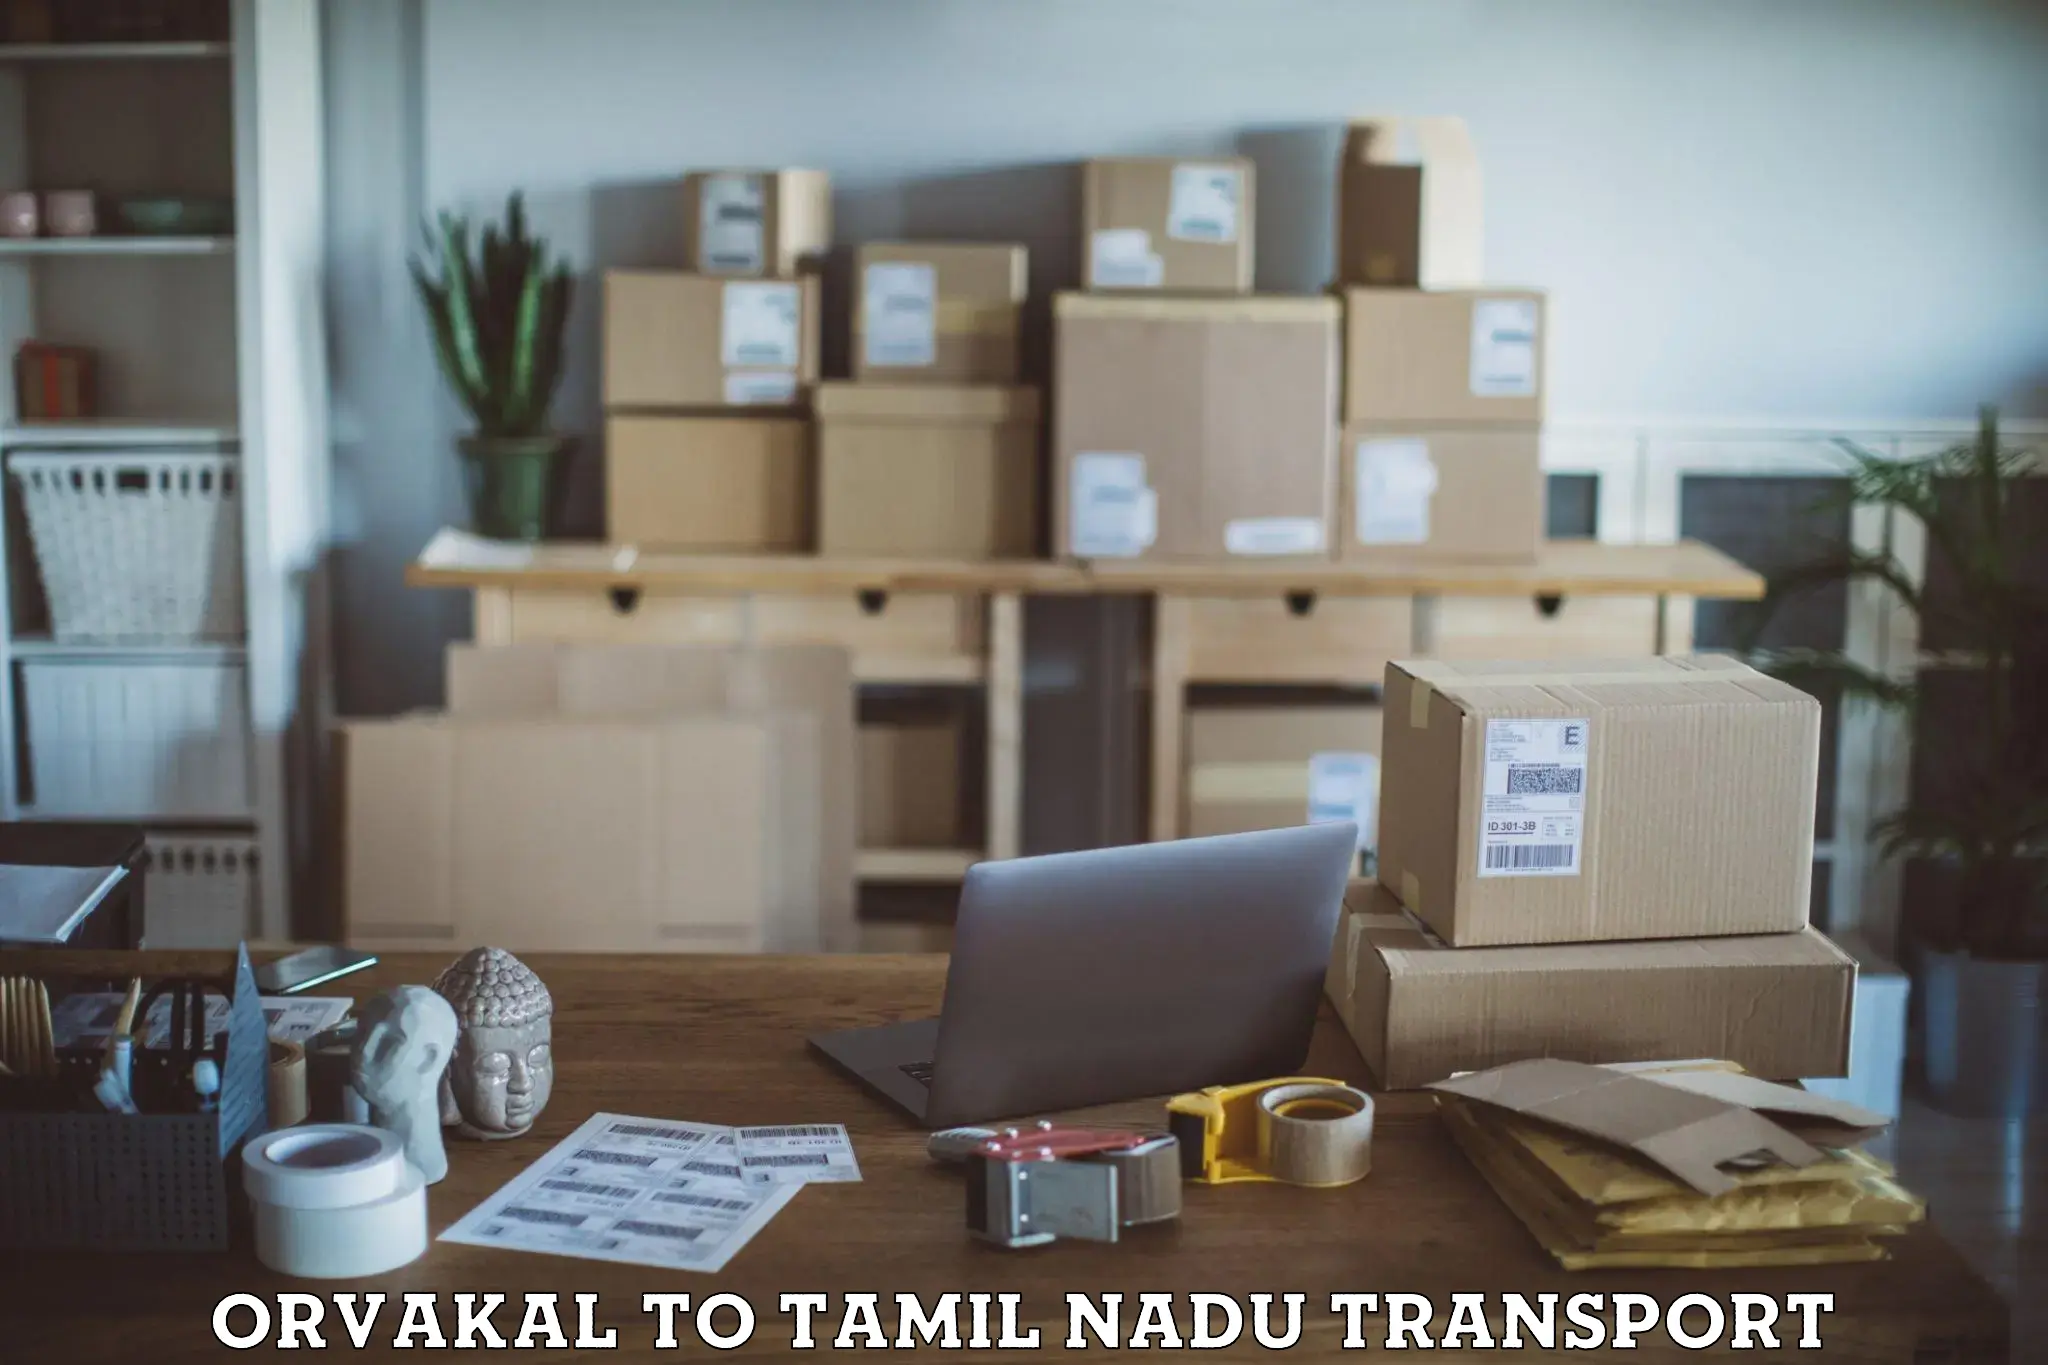 Nearby transport service Orvakal to Tiruturaipundi